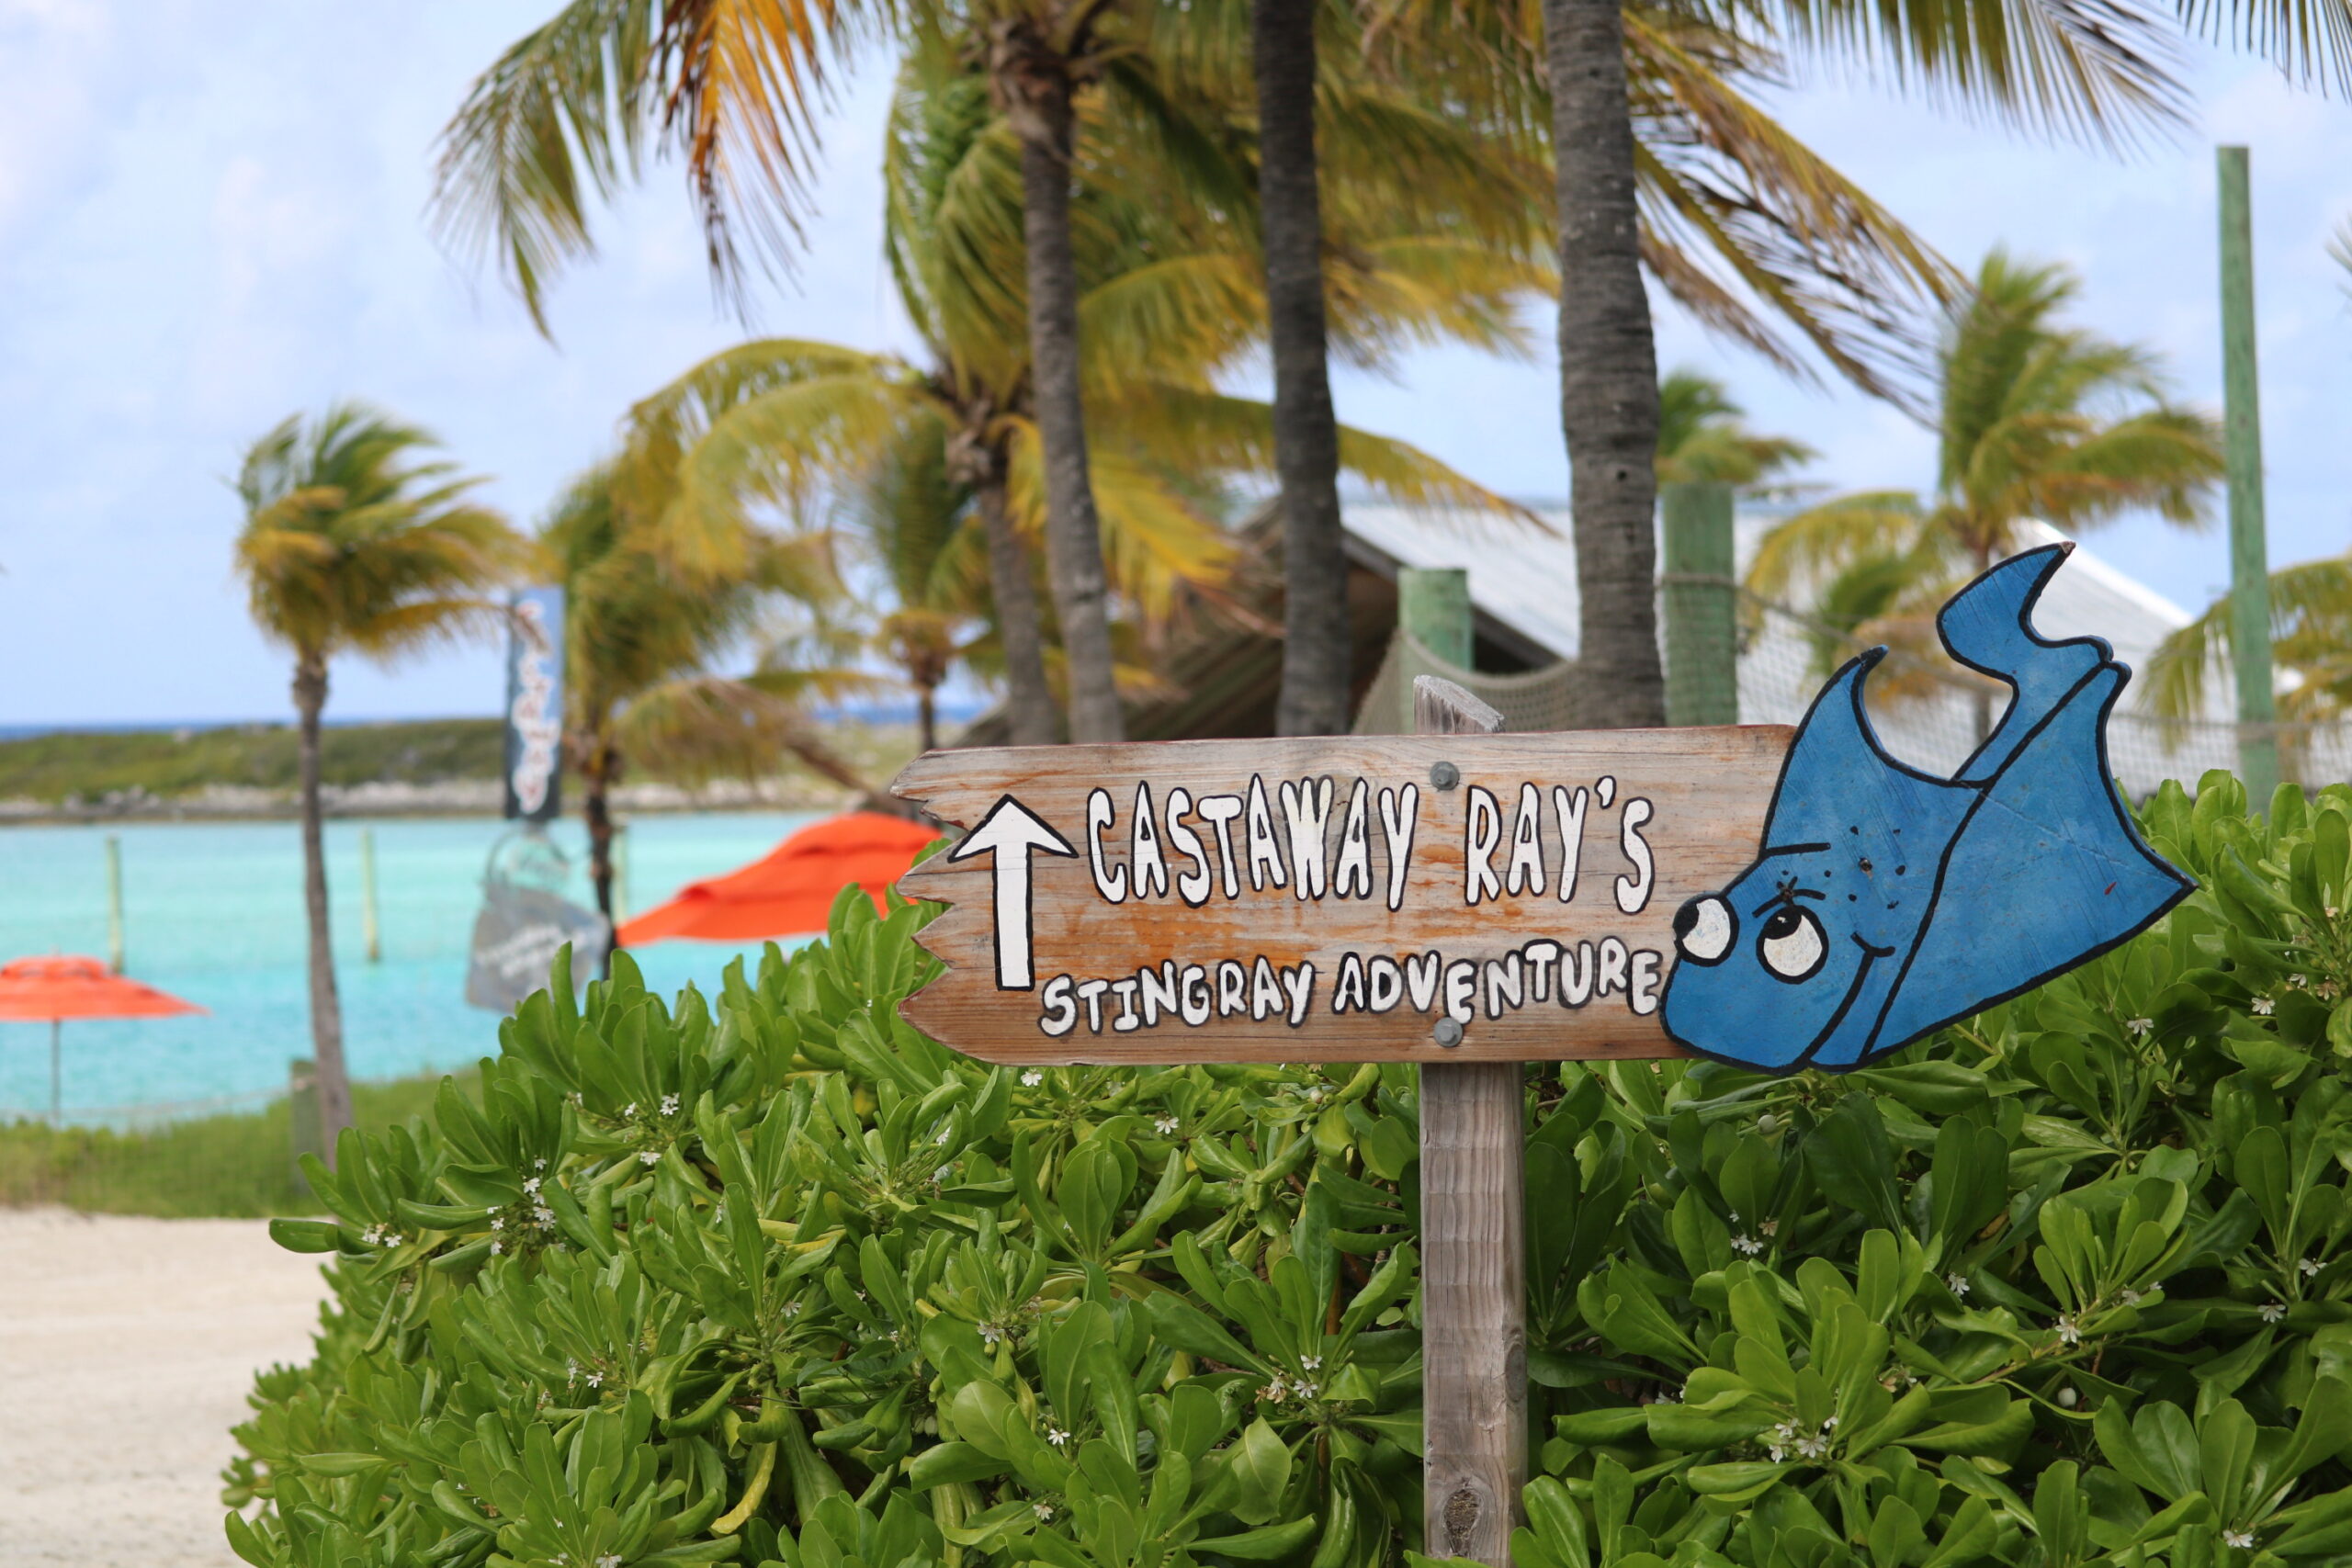 Ray's Stingray Adventure at Castaway Cay